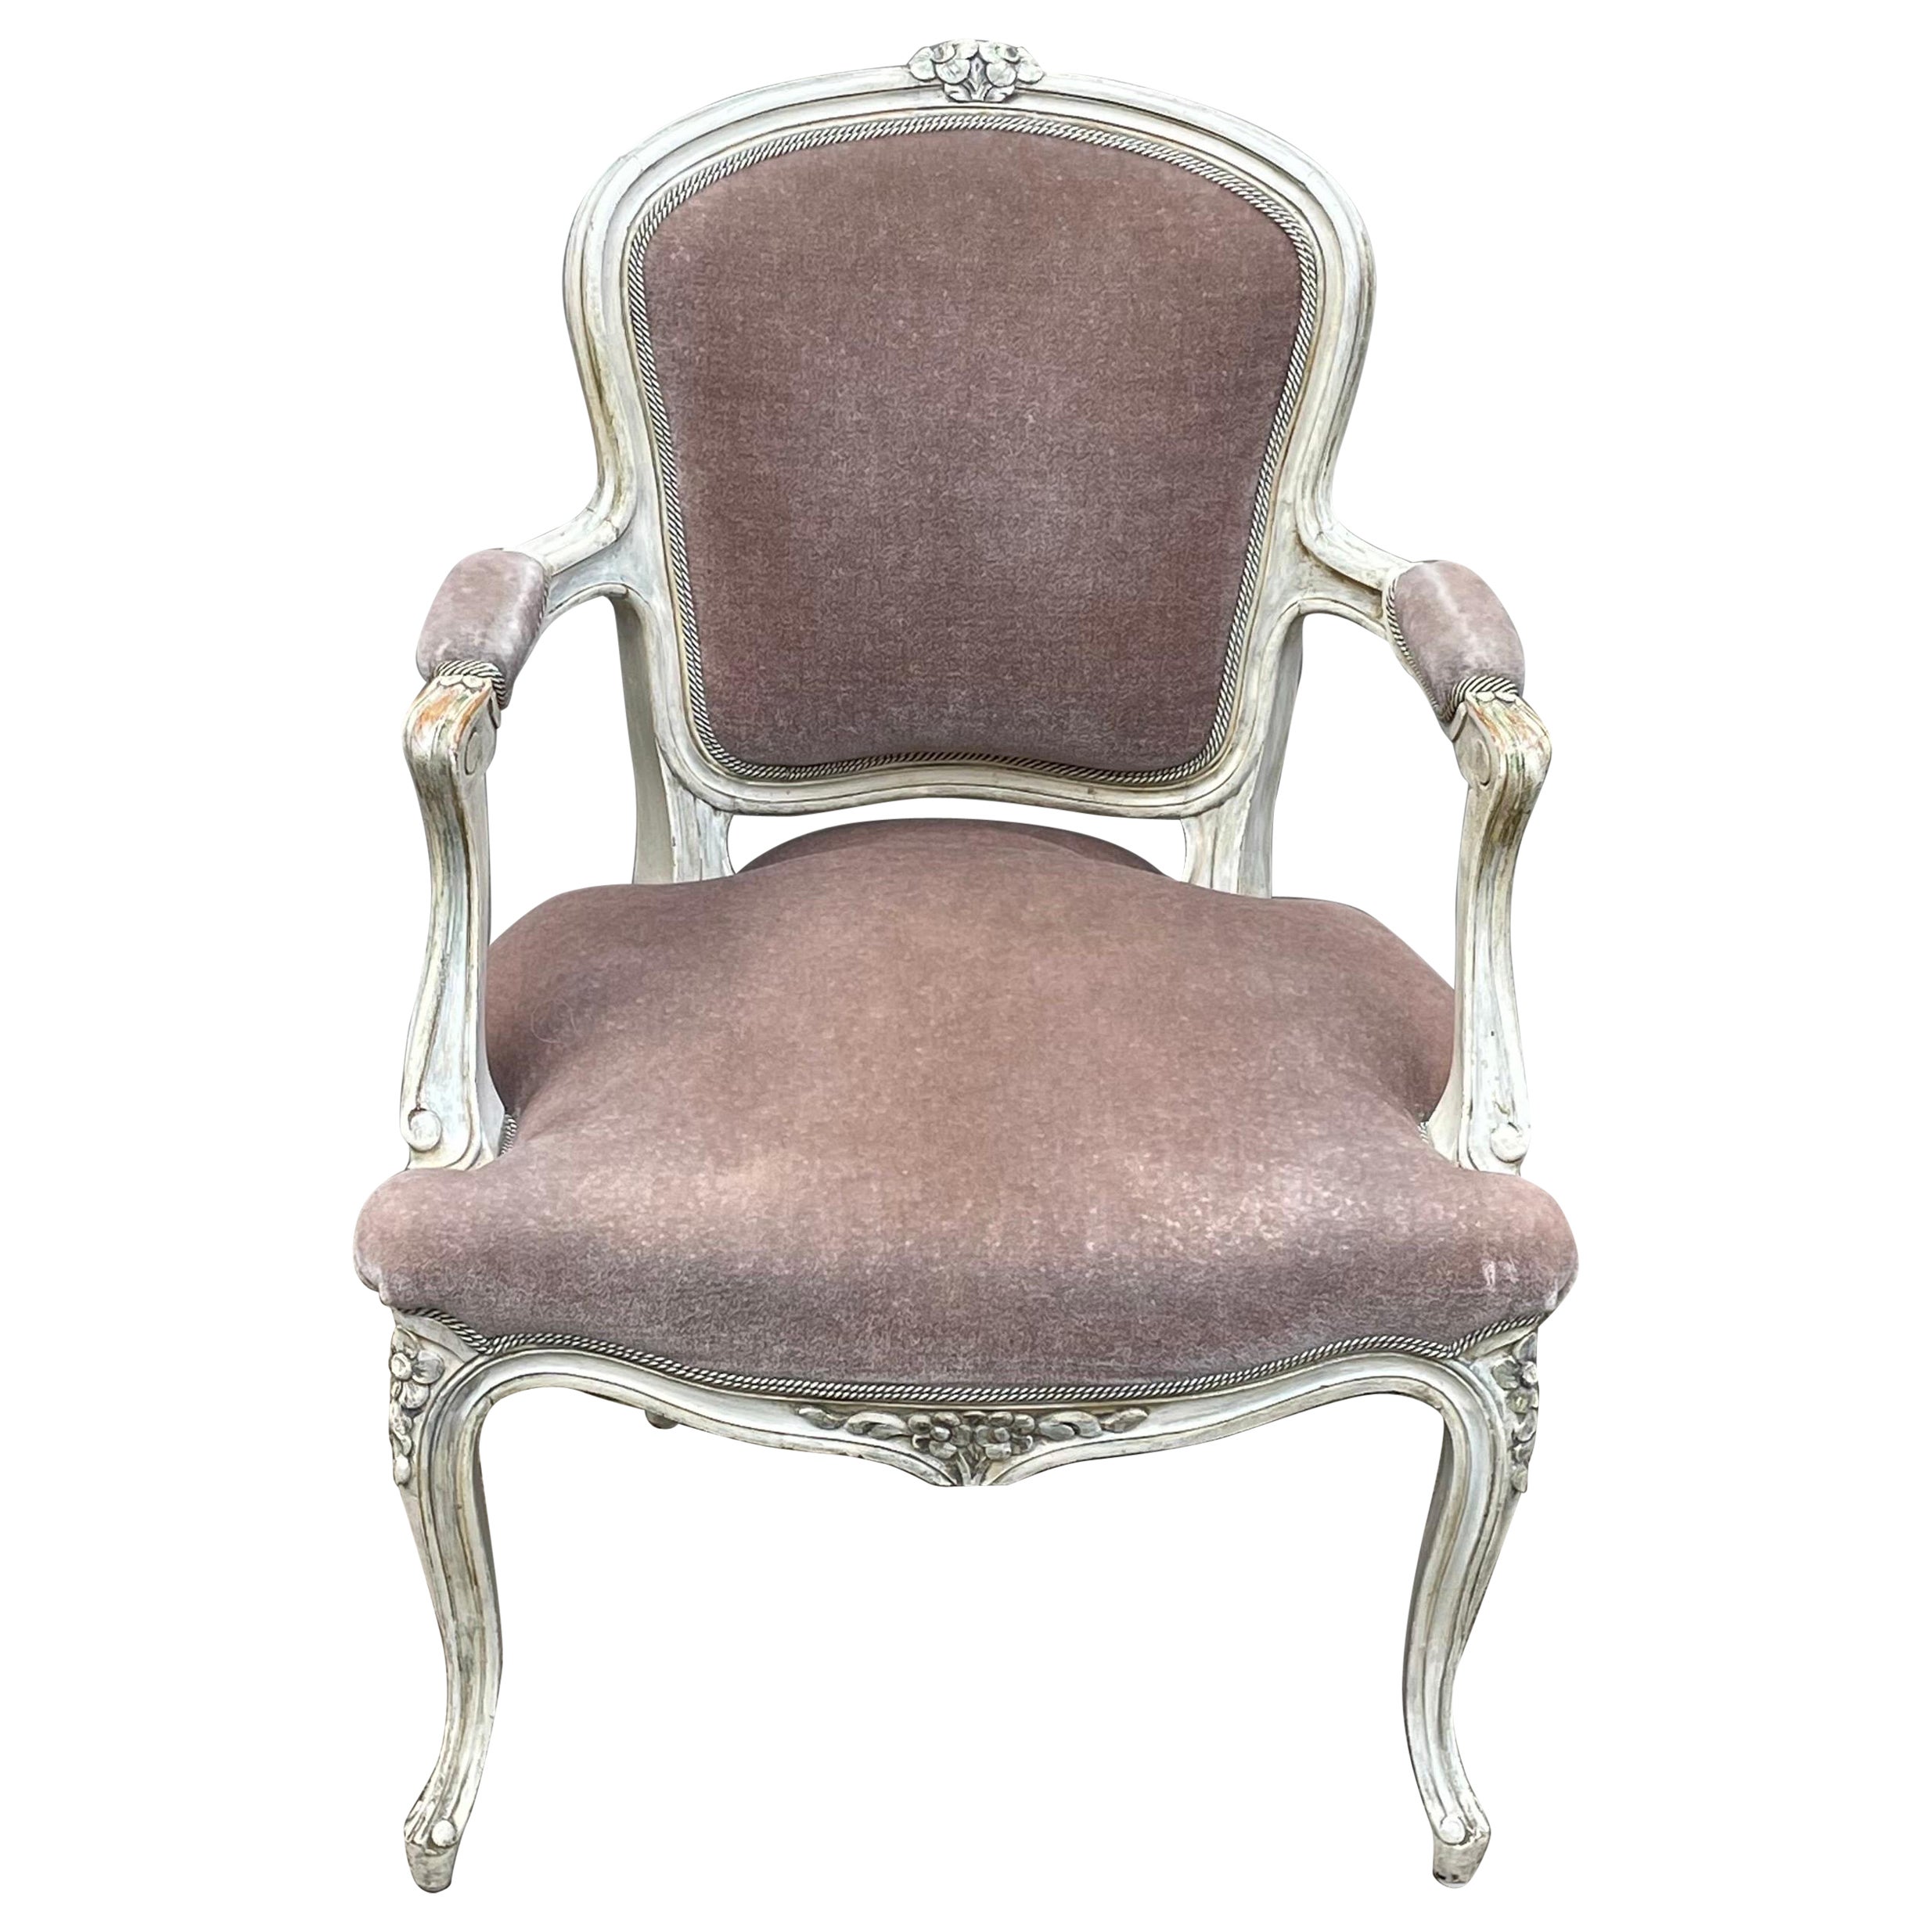 Side Chair in Light Plum Velvet Mohair, 1950's, French Hollywood Regency For Sale